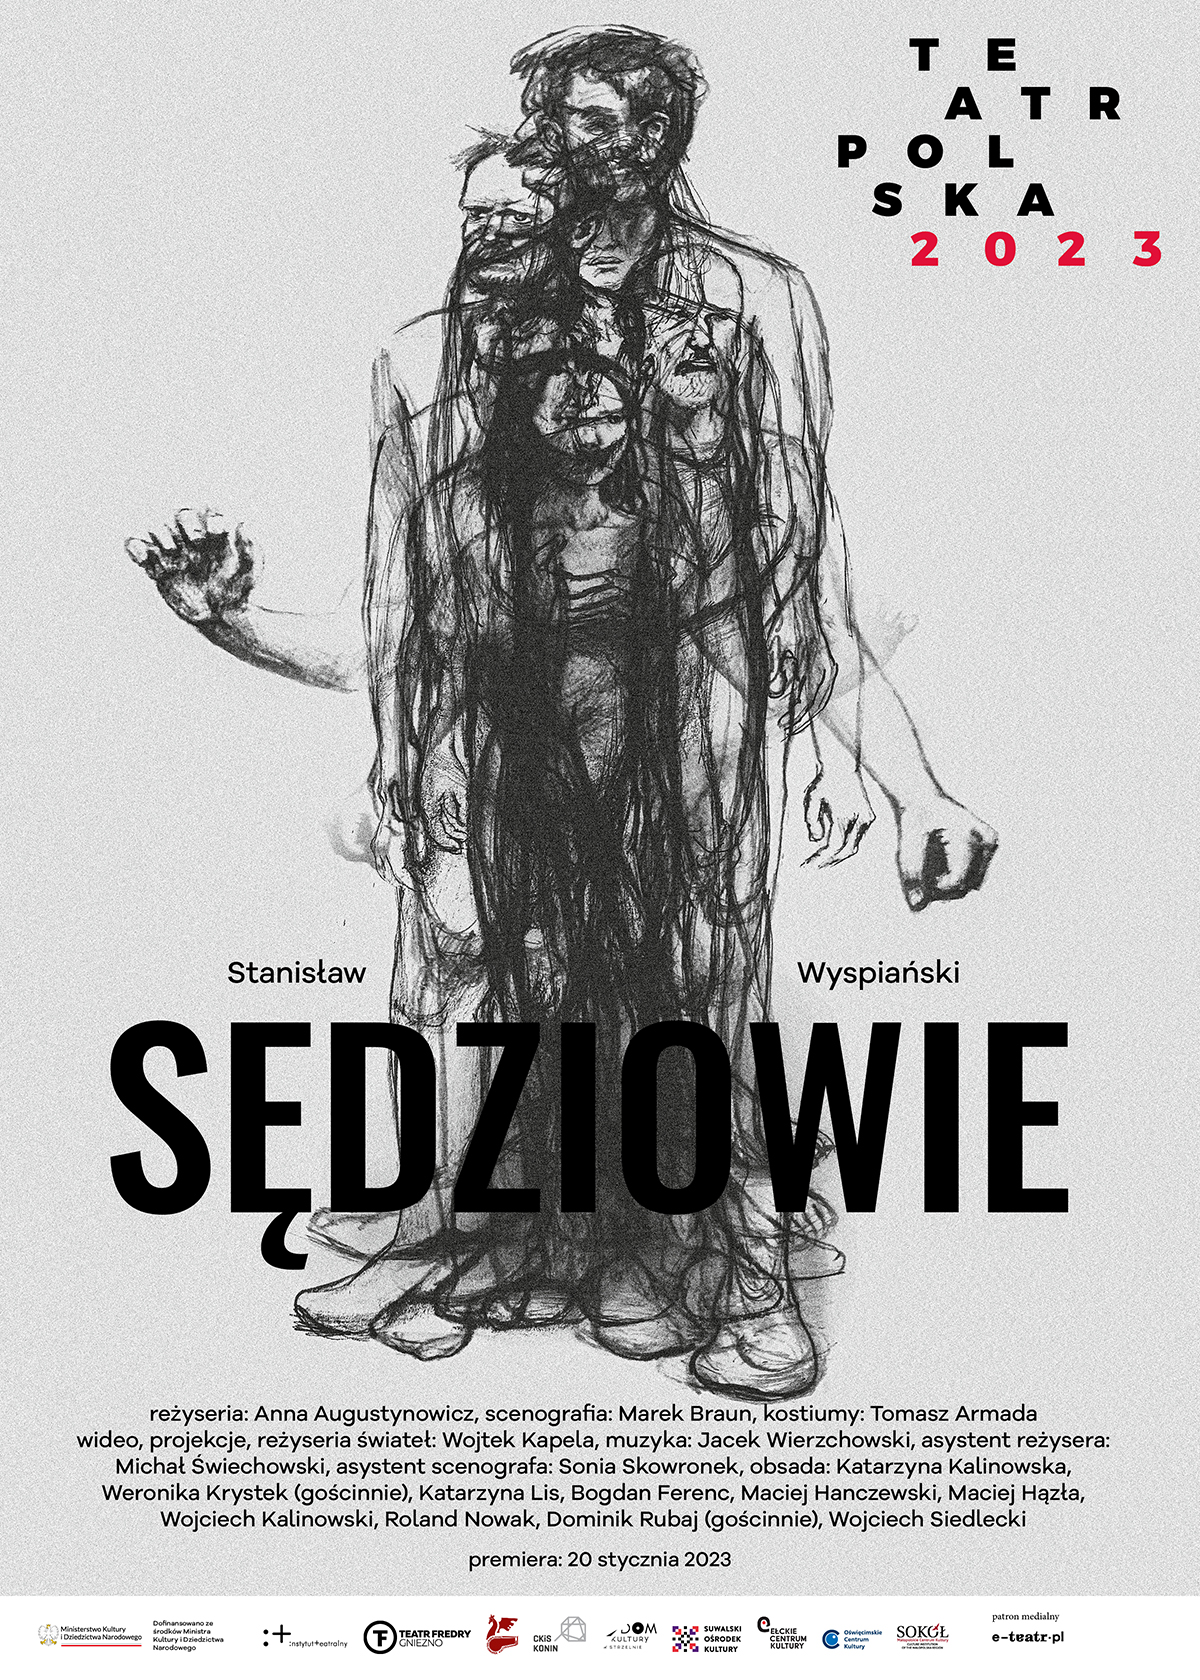 Teatr Polska 2023 - Spektakl "Sędziowie"